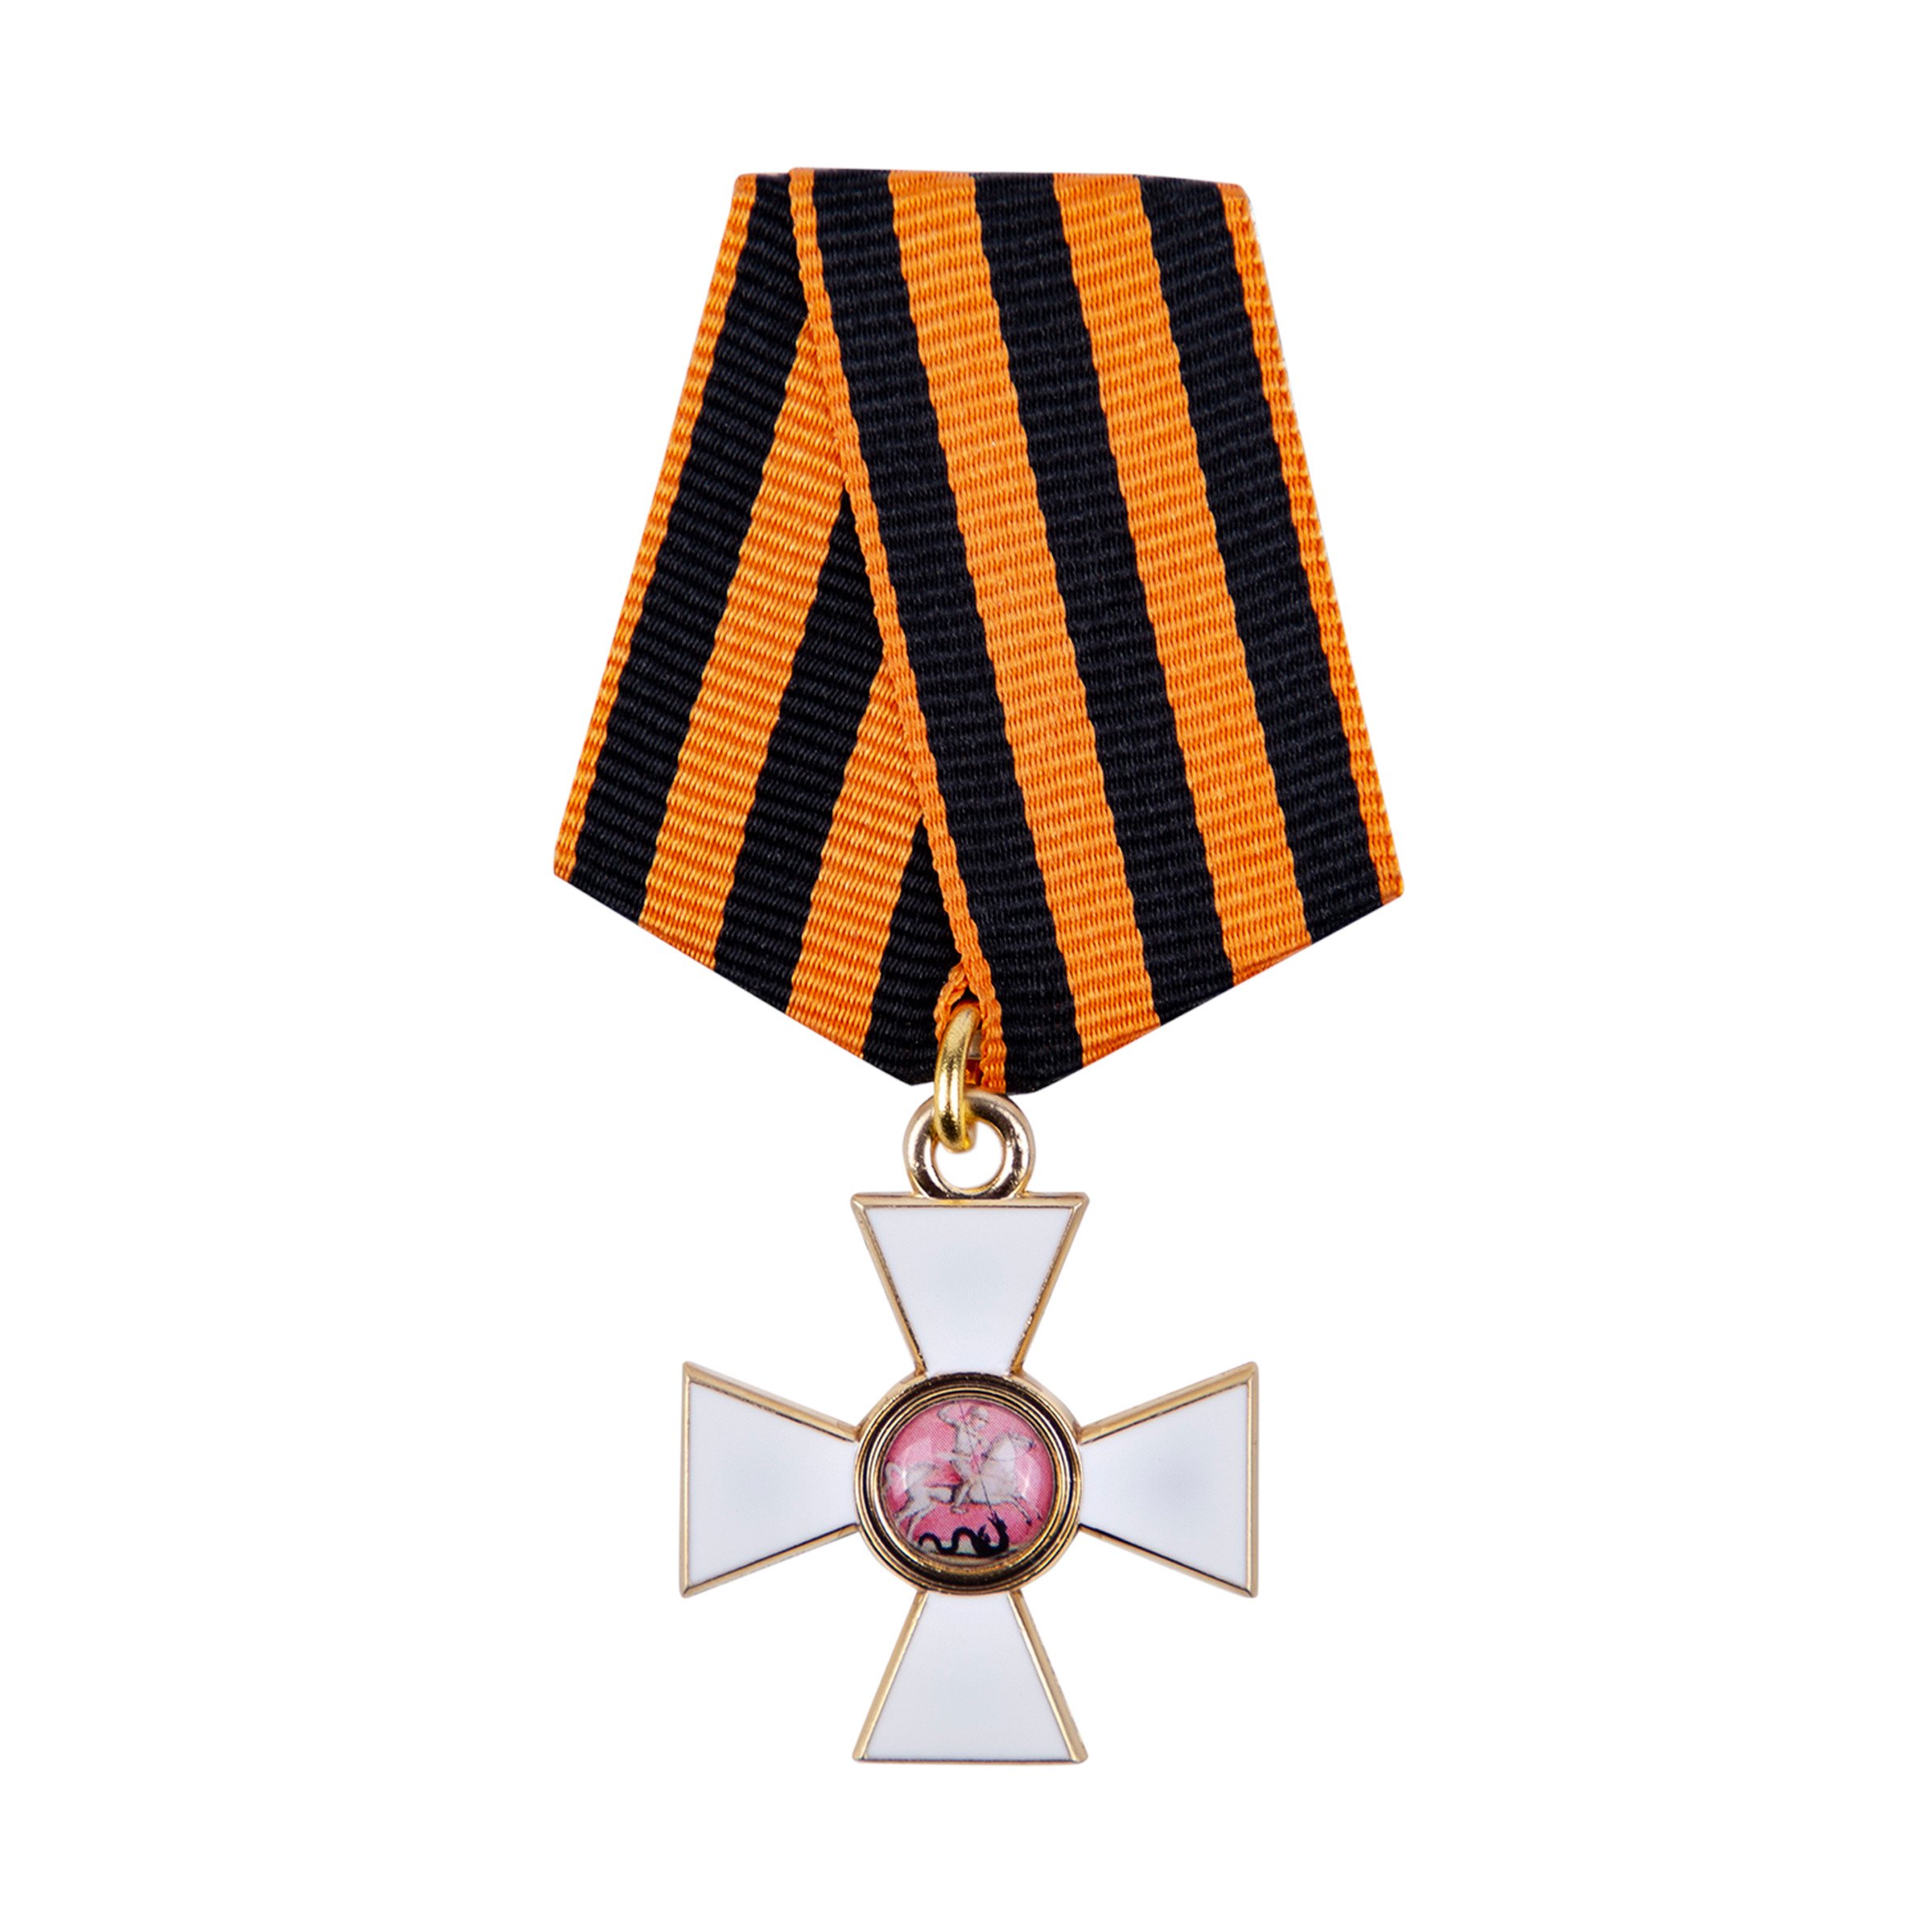 Св го. Орден Святого Георгия Победоносца. Орден Святого Георгия 4-й степени. Орден св Георгия 1-й степени. Орден святогогеория 4 степени.